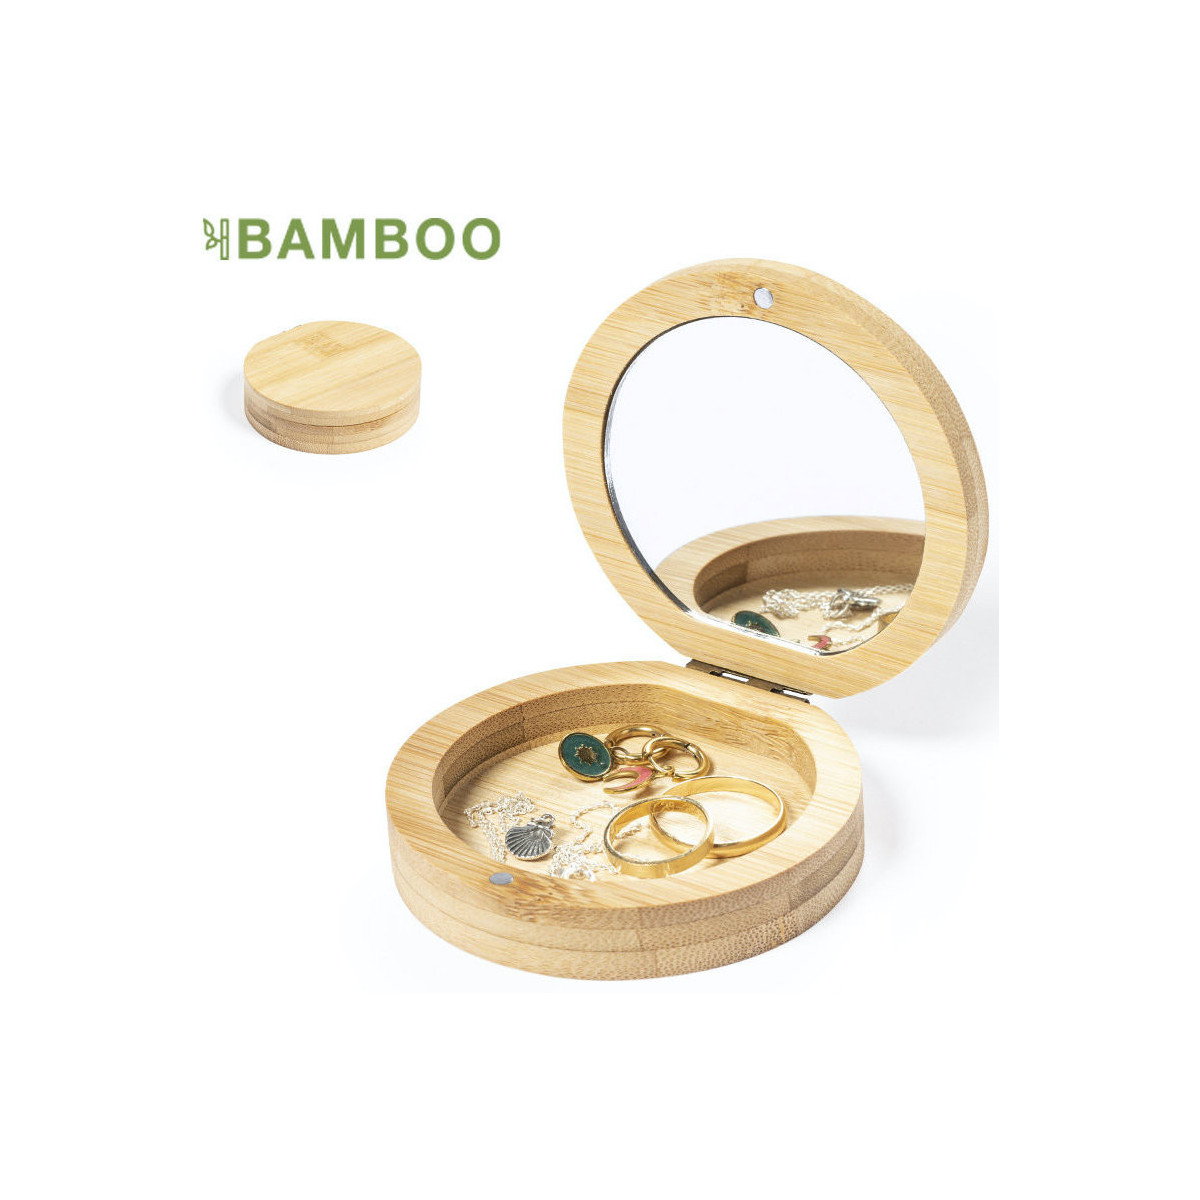 Caixa de joias de bambu com espelho de vestir